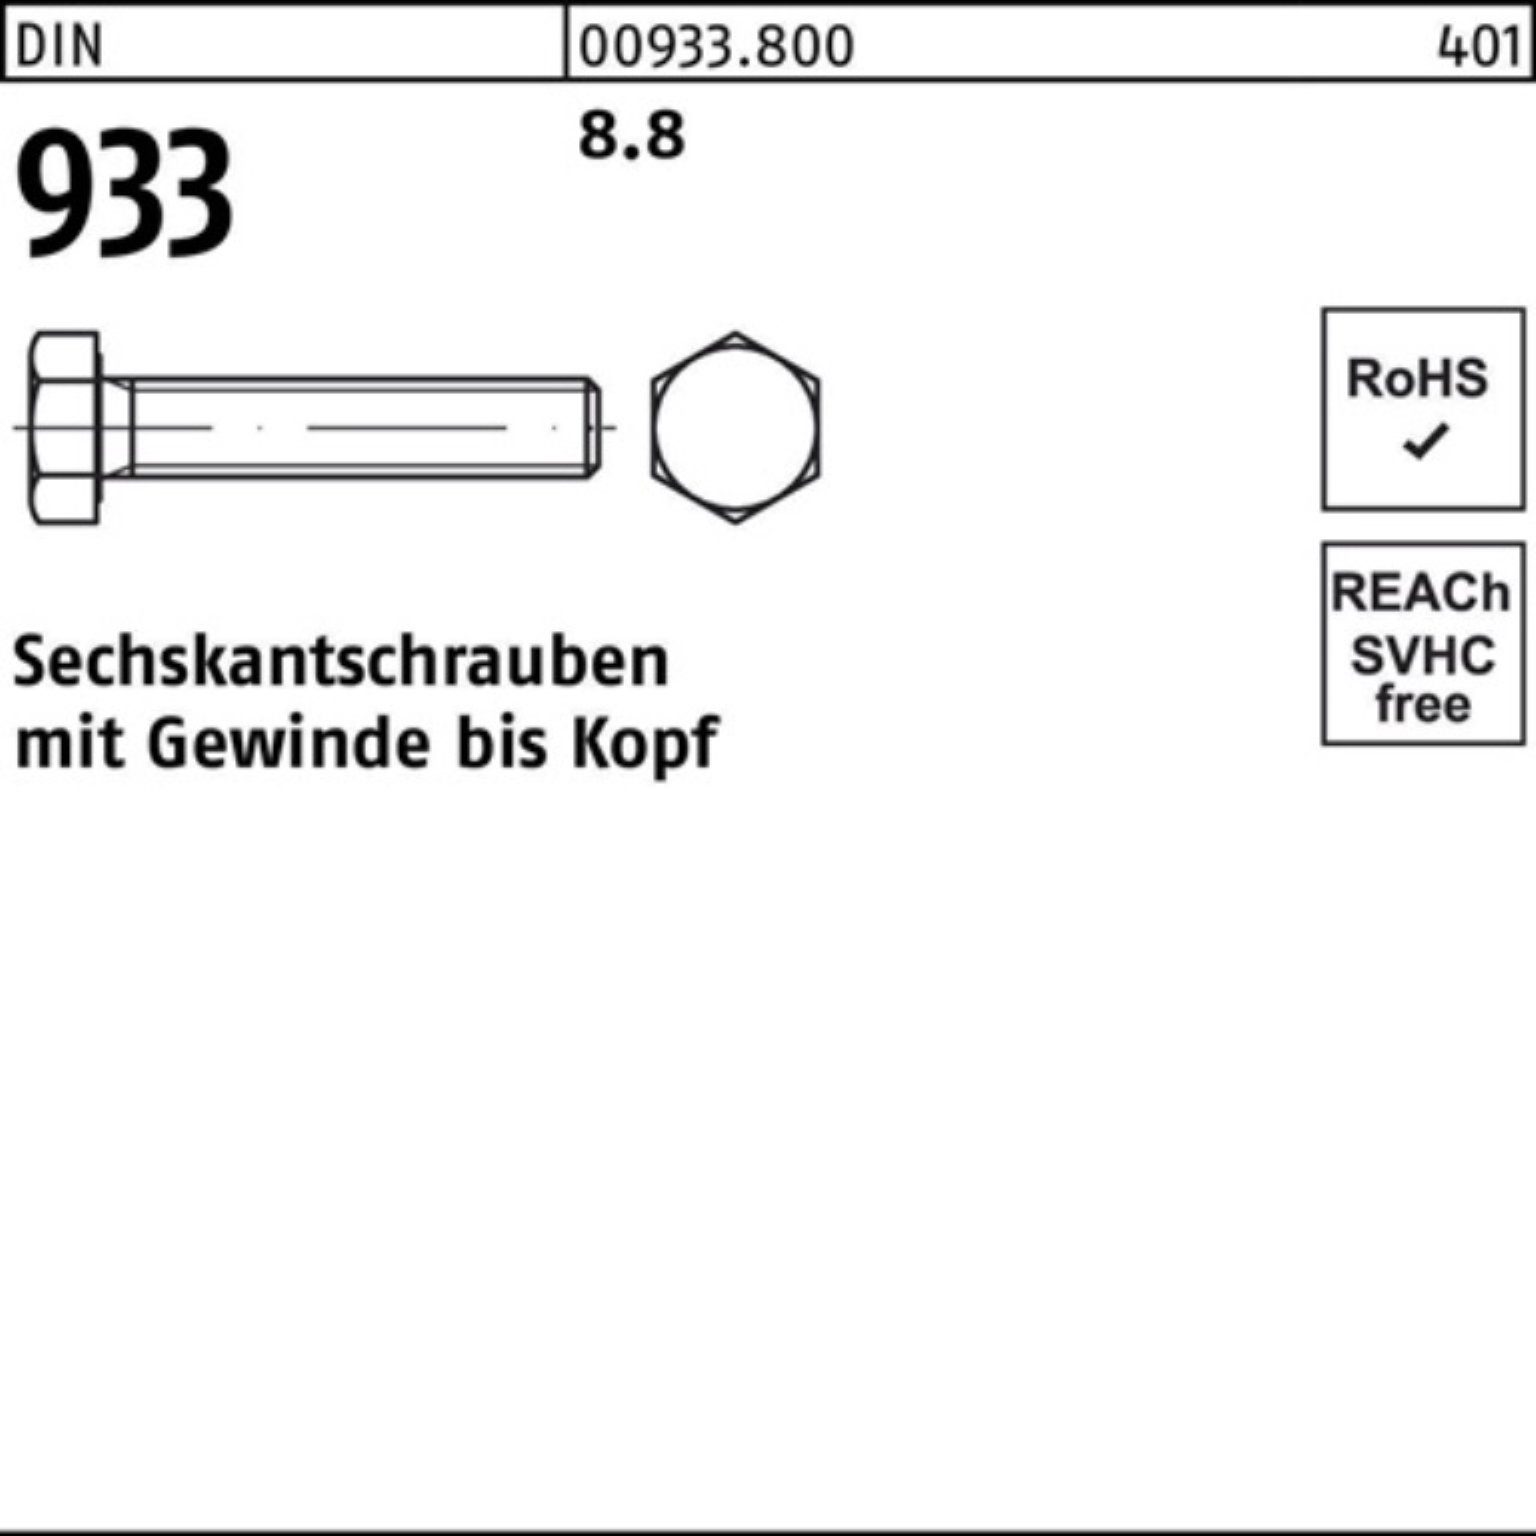 Reyher Sechskantschraube 100er Pack 933 DIN VG 1 M20x 220 933 8.8 DIN Sechskantschraube Stück